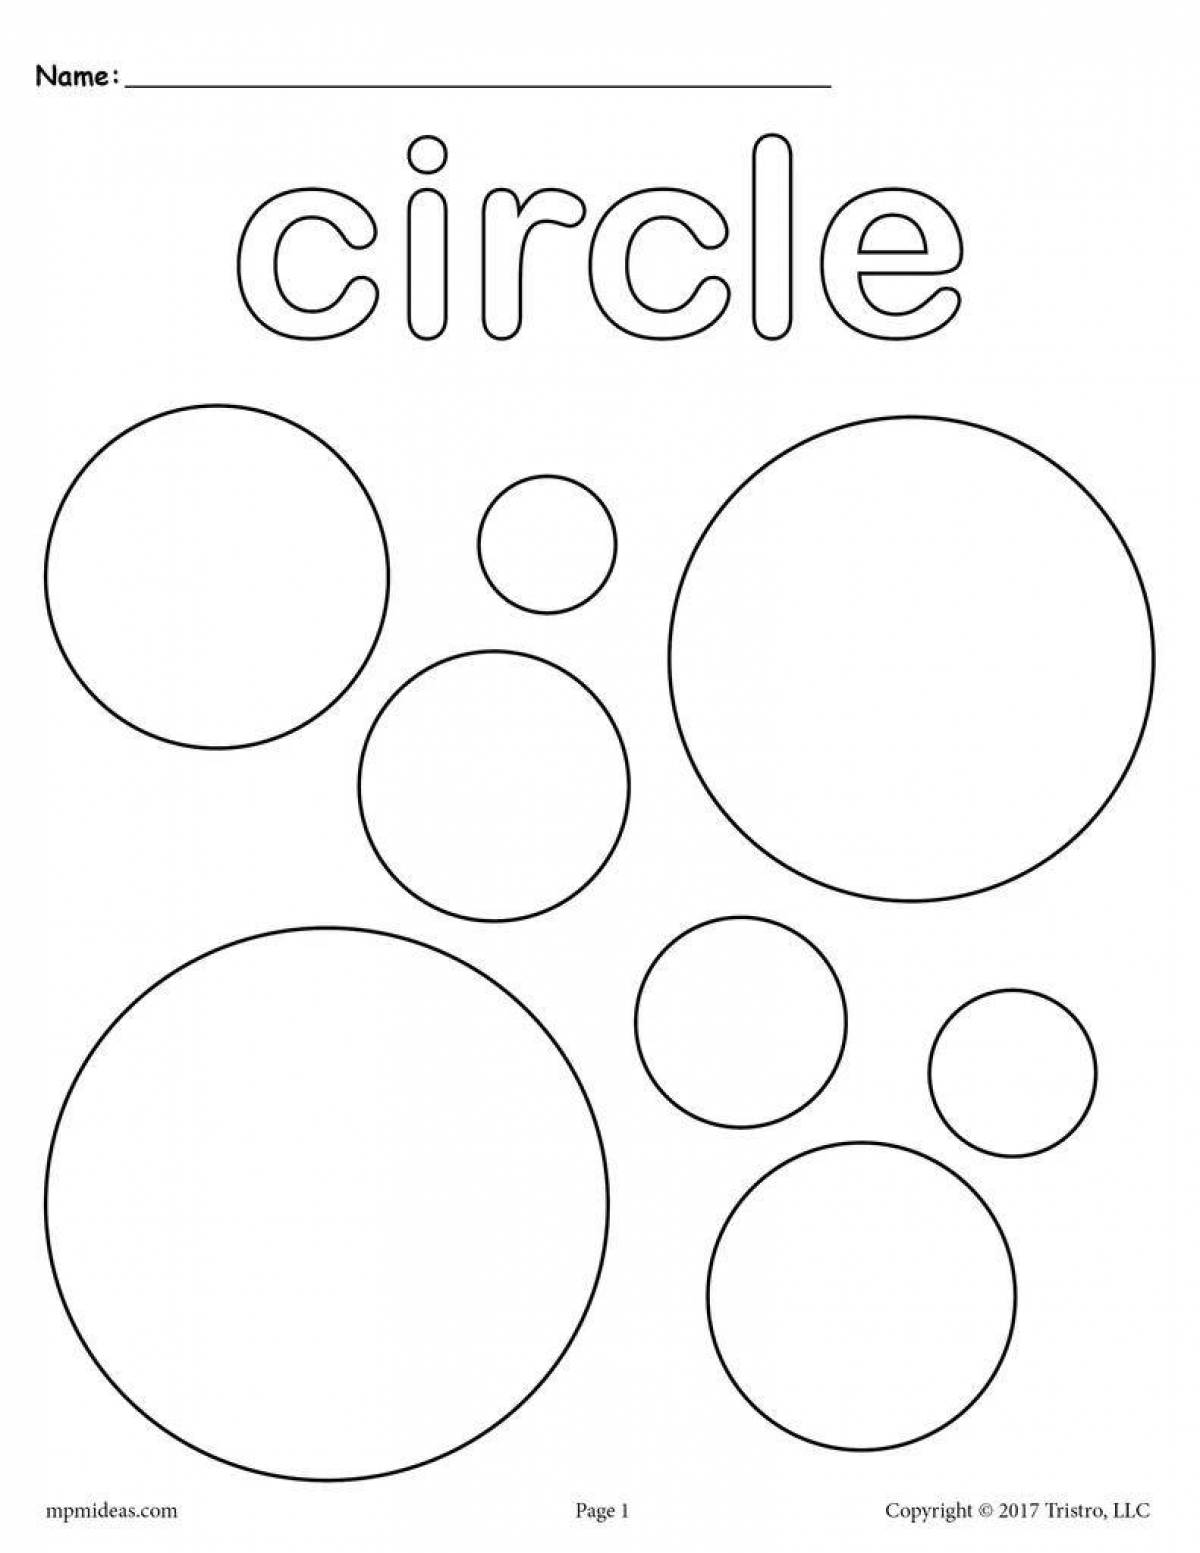 Раскраска жирные круги для детей